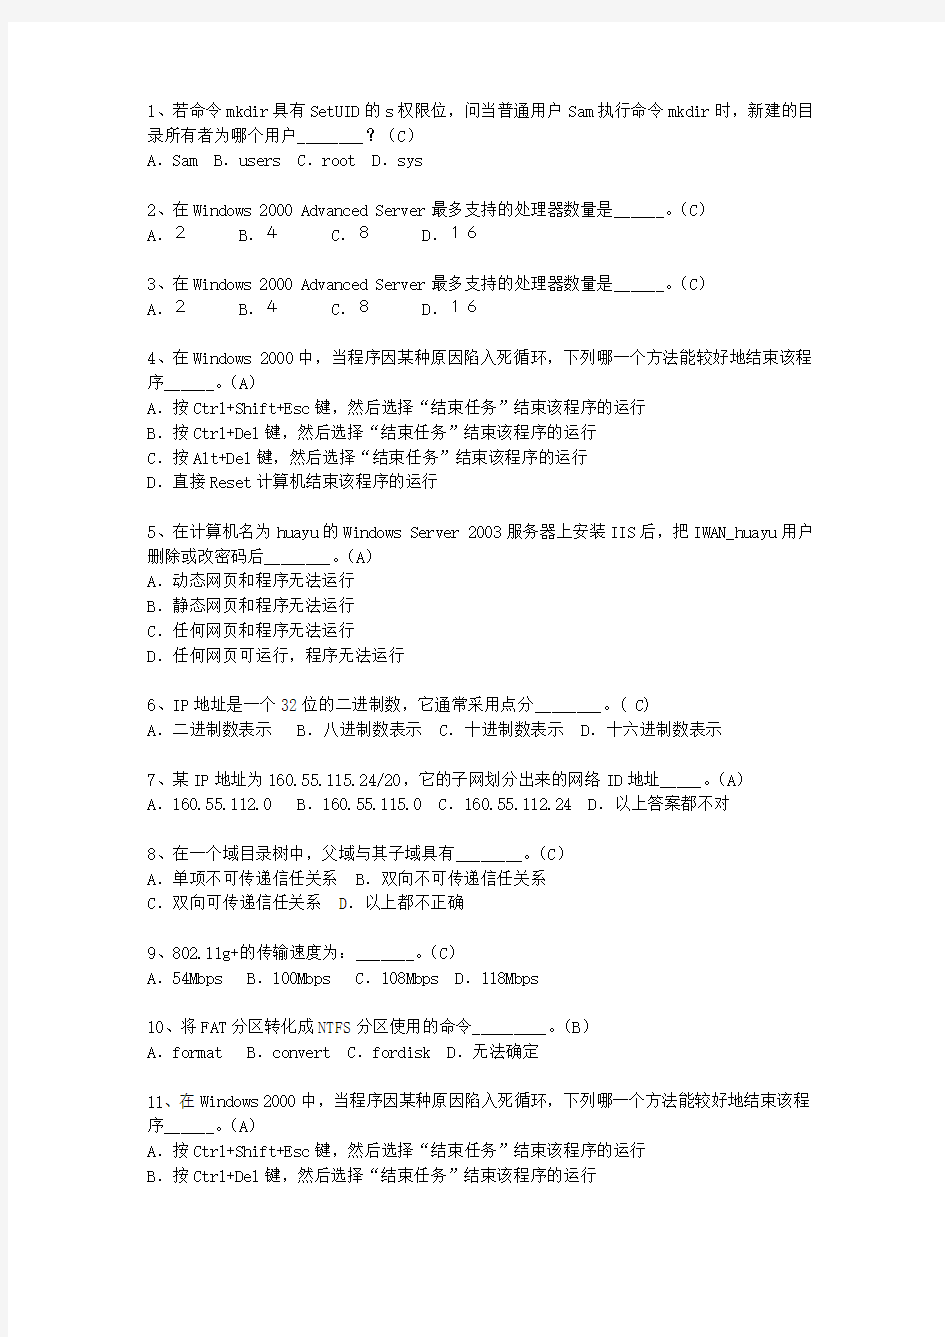 2010黑龙江省软考网络工程师考试答题技巧